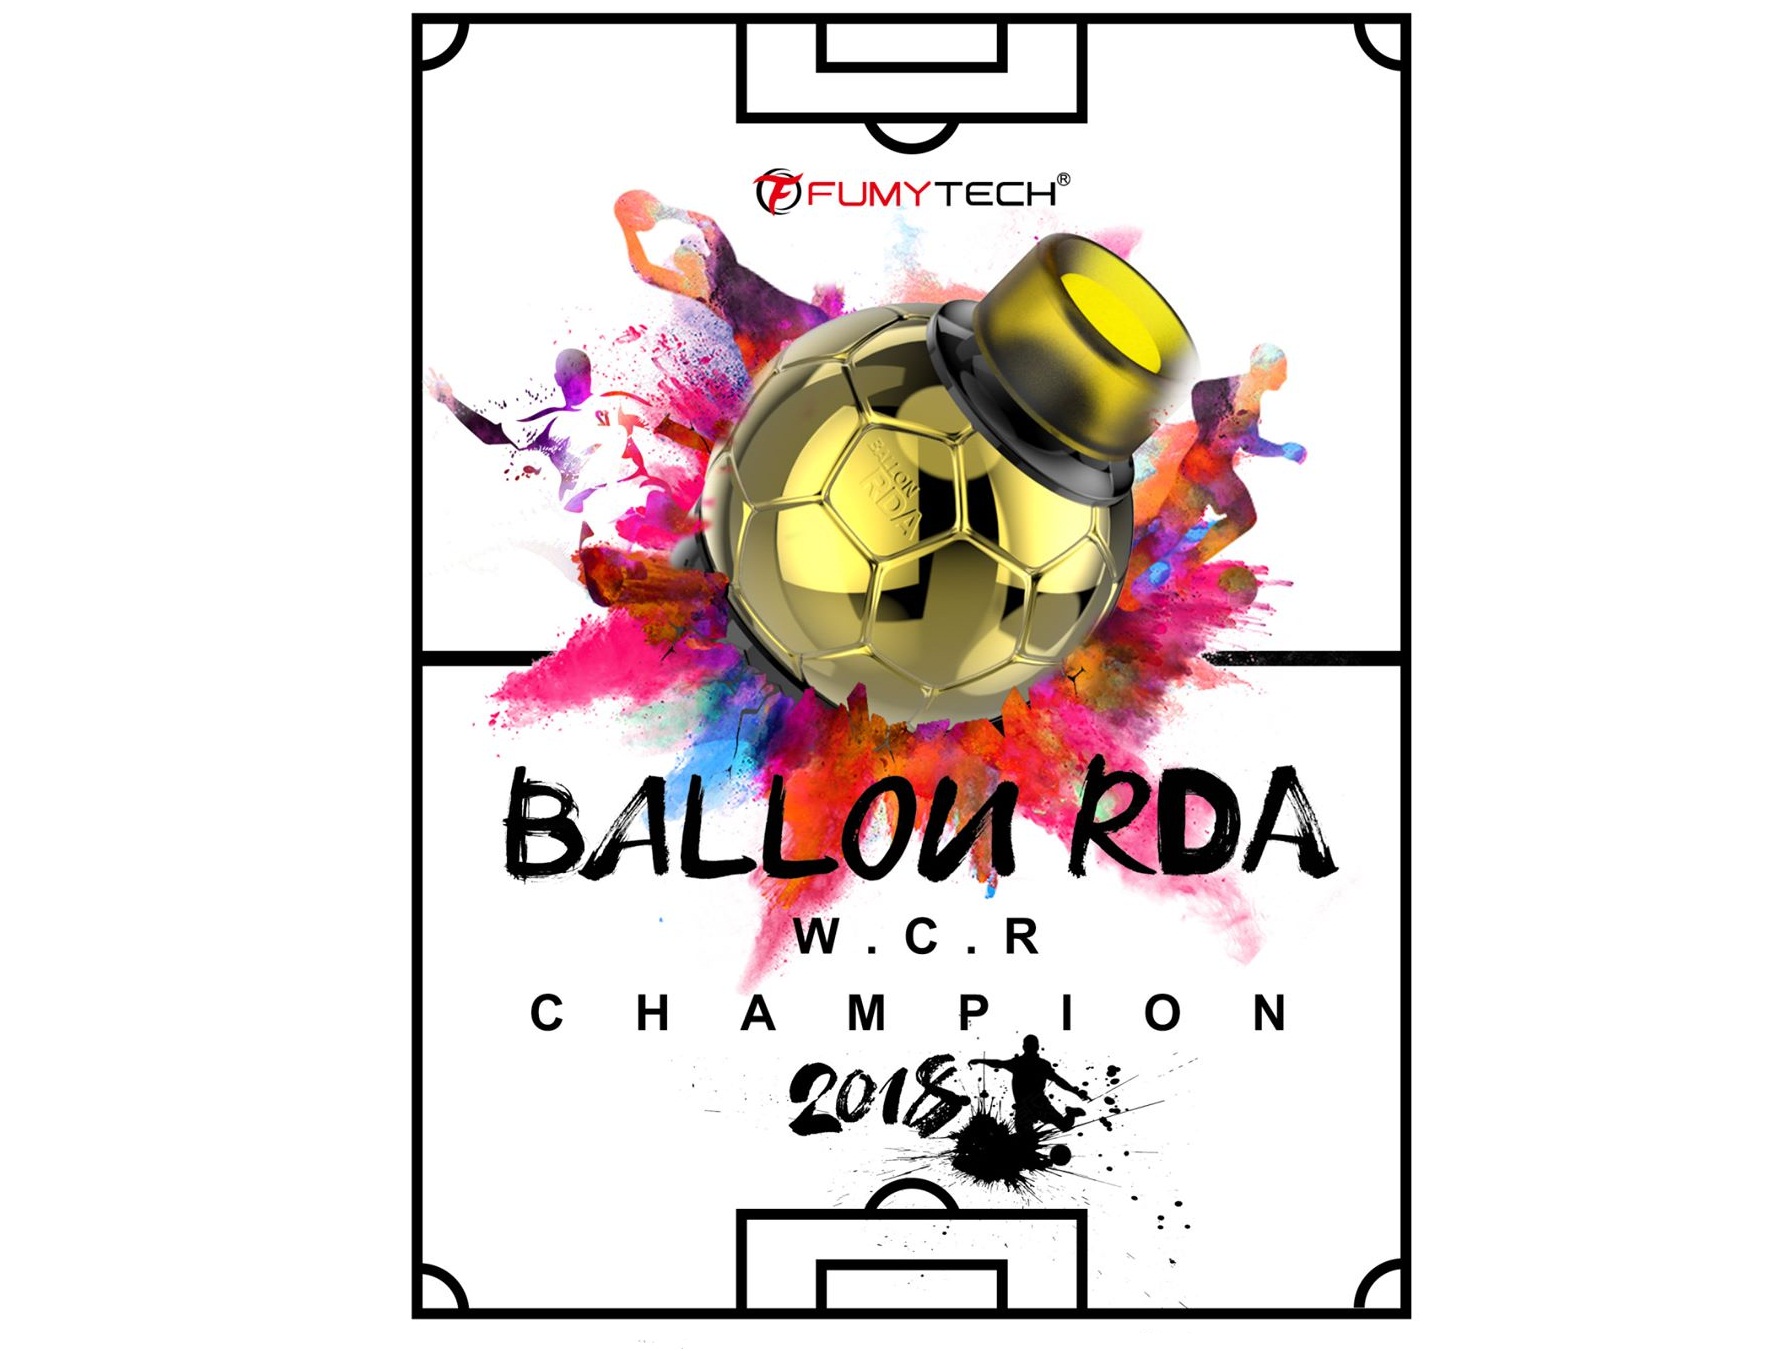 Fumytech Ballon RDA - все на футбол!  - олеее, оле, оле, оле...